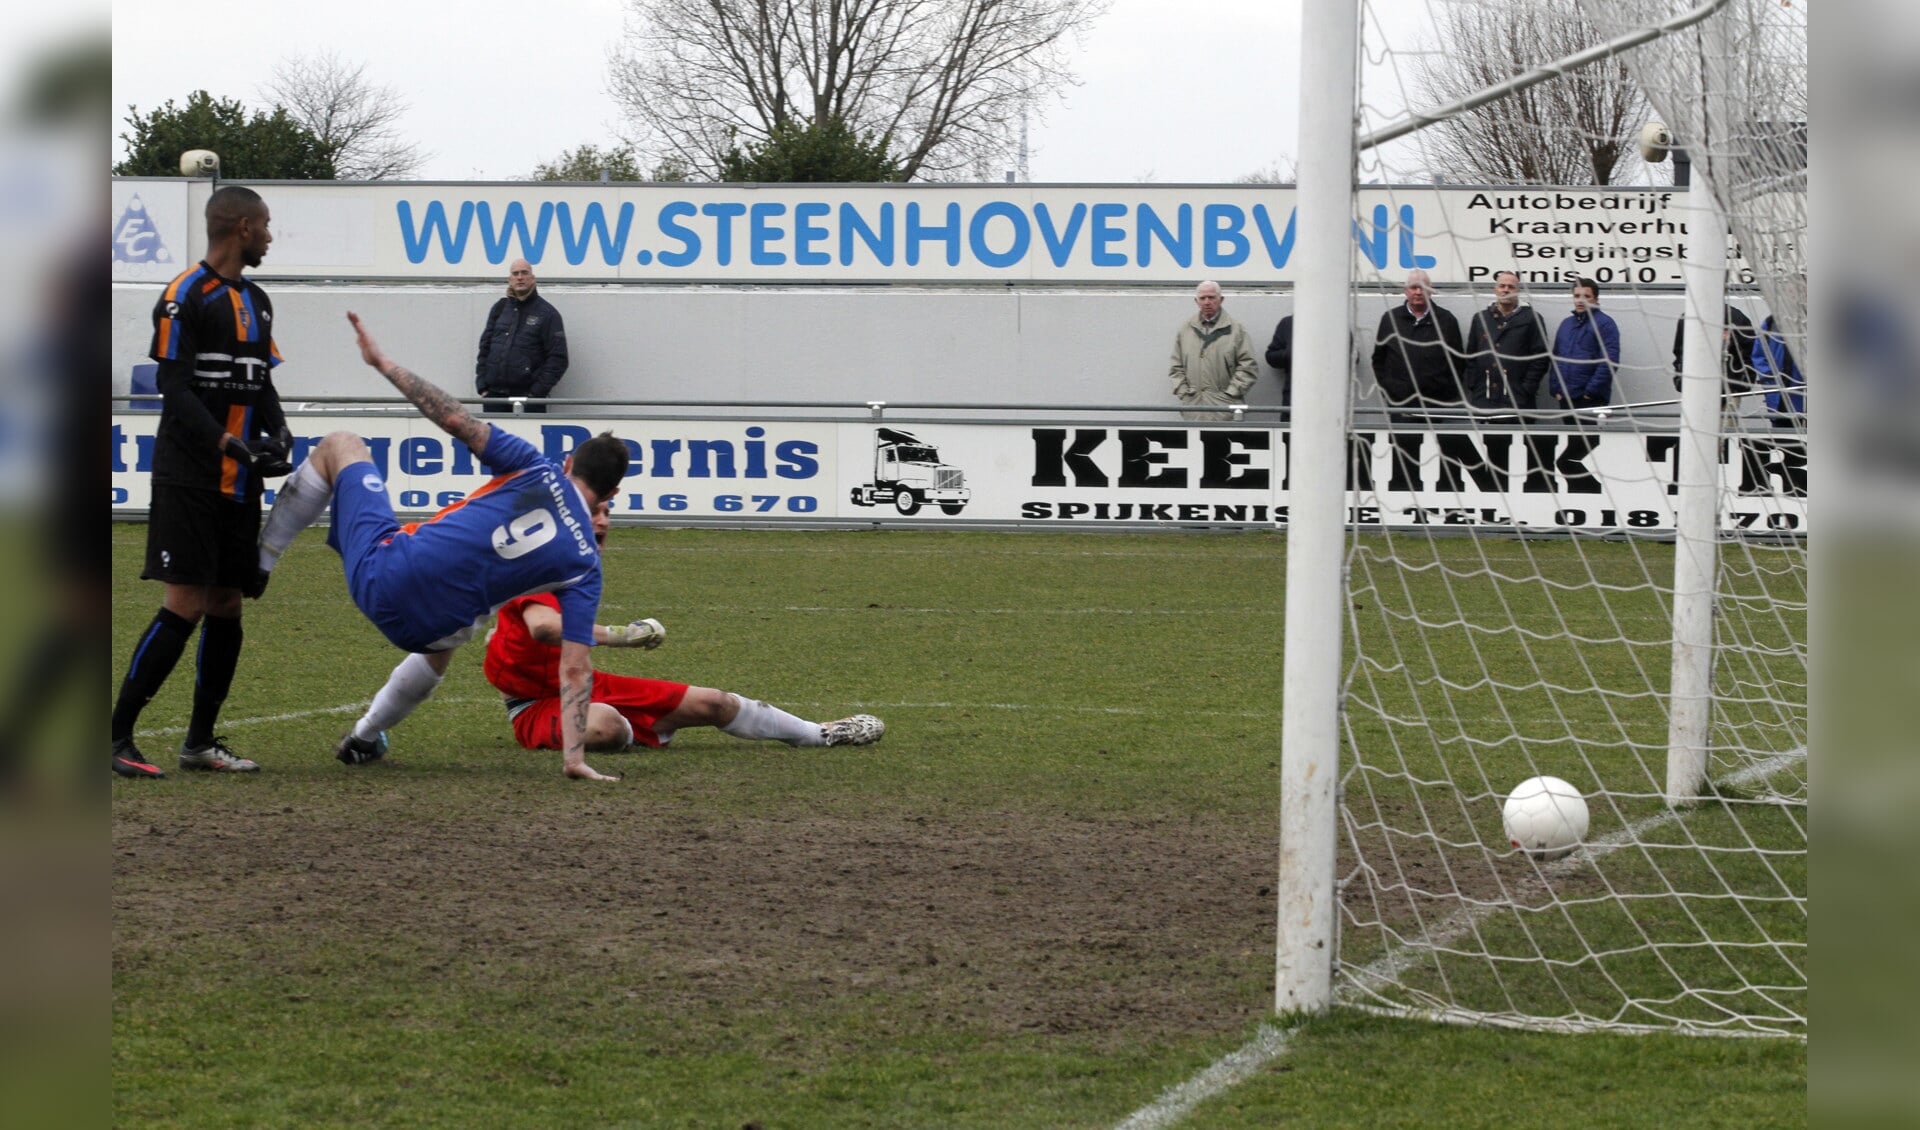 John van Tiggelen maakt een gelukkige goal. Foto: Aad van der Voorn